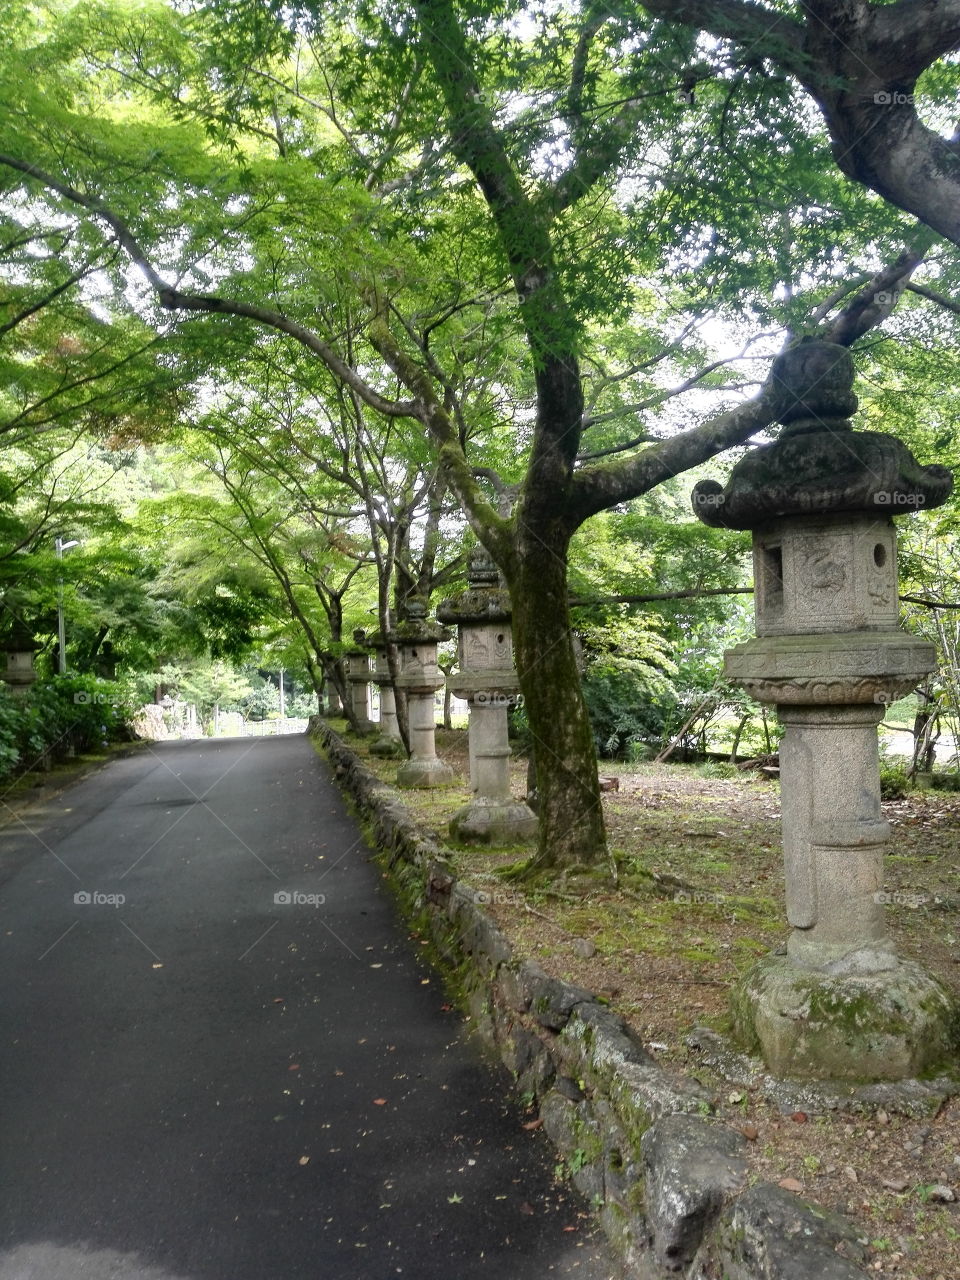 Mitaborakobo Hokke Temple